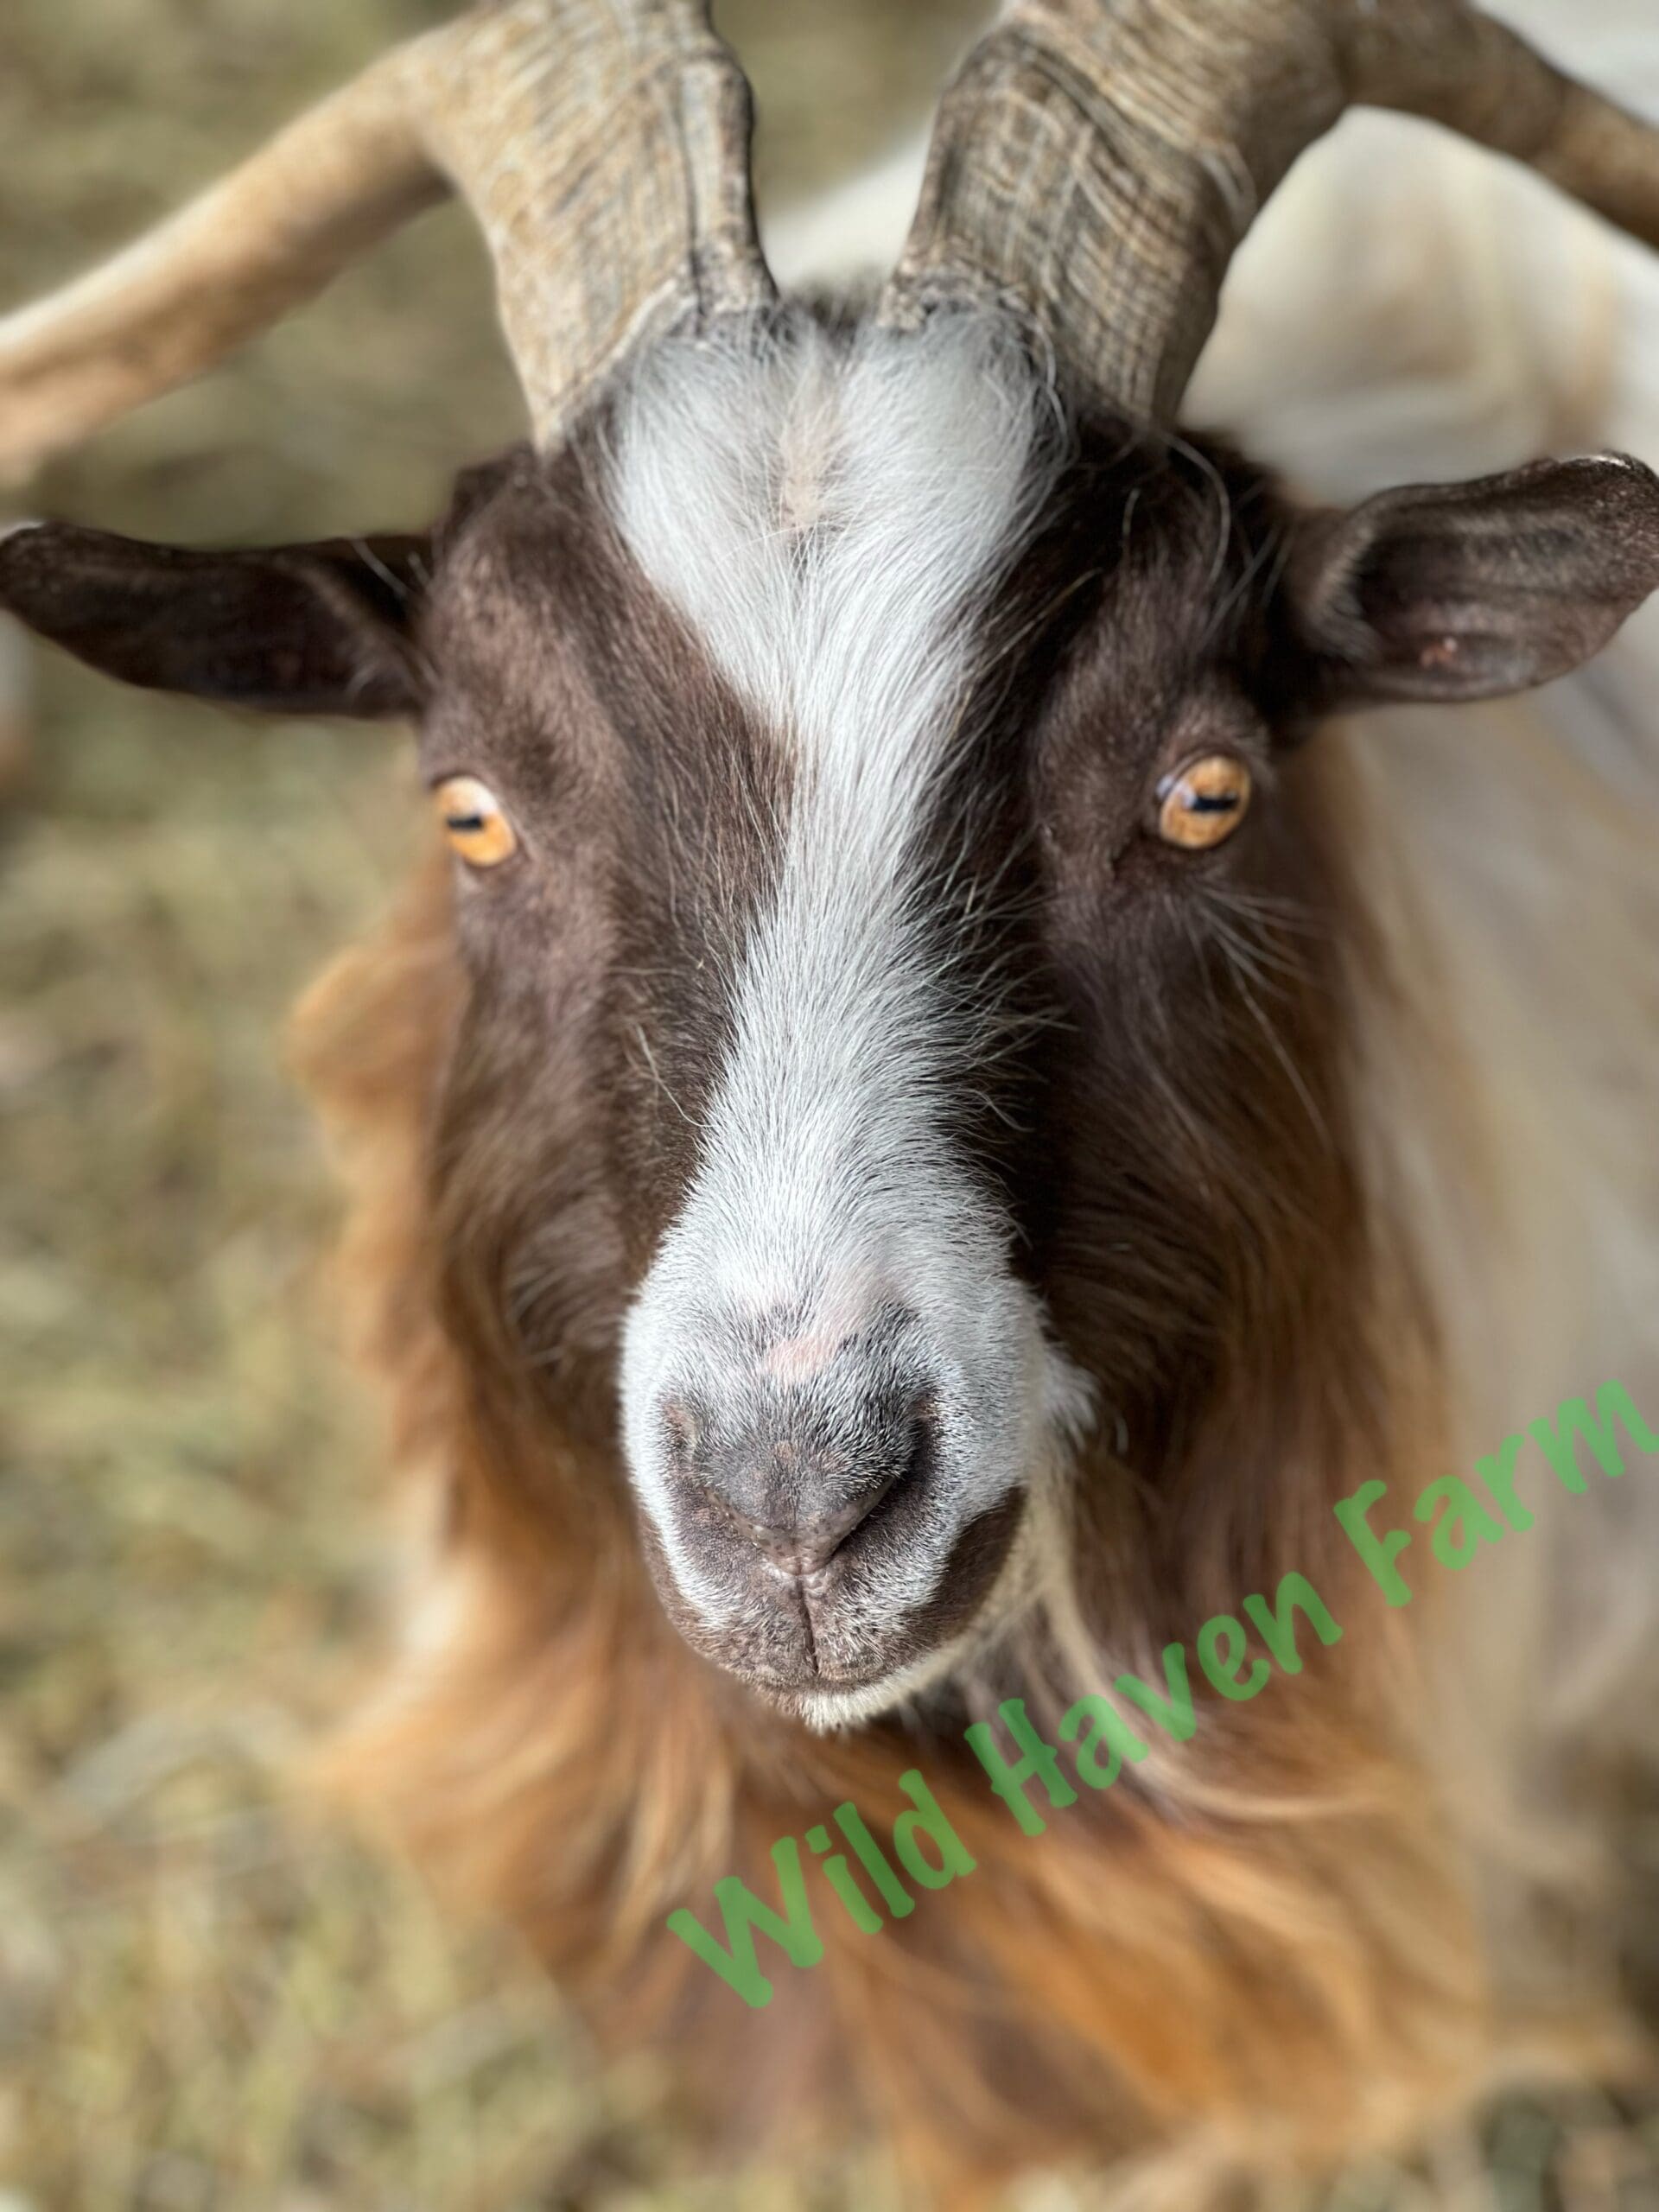 Closeup of goat face